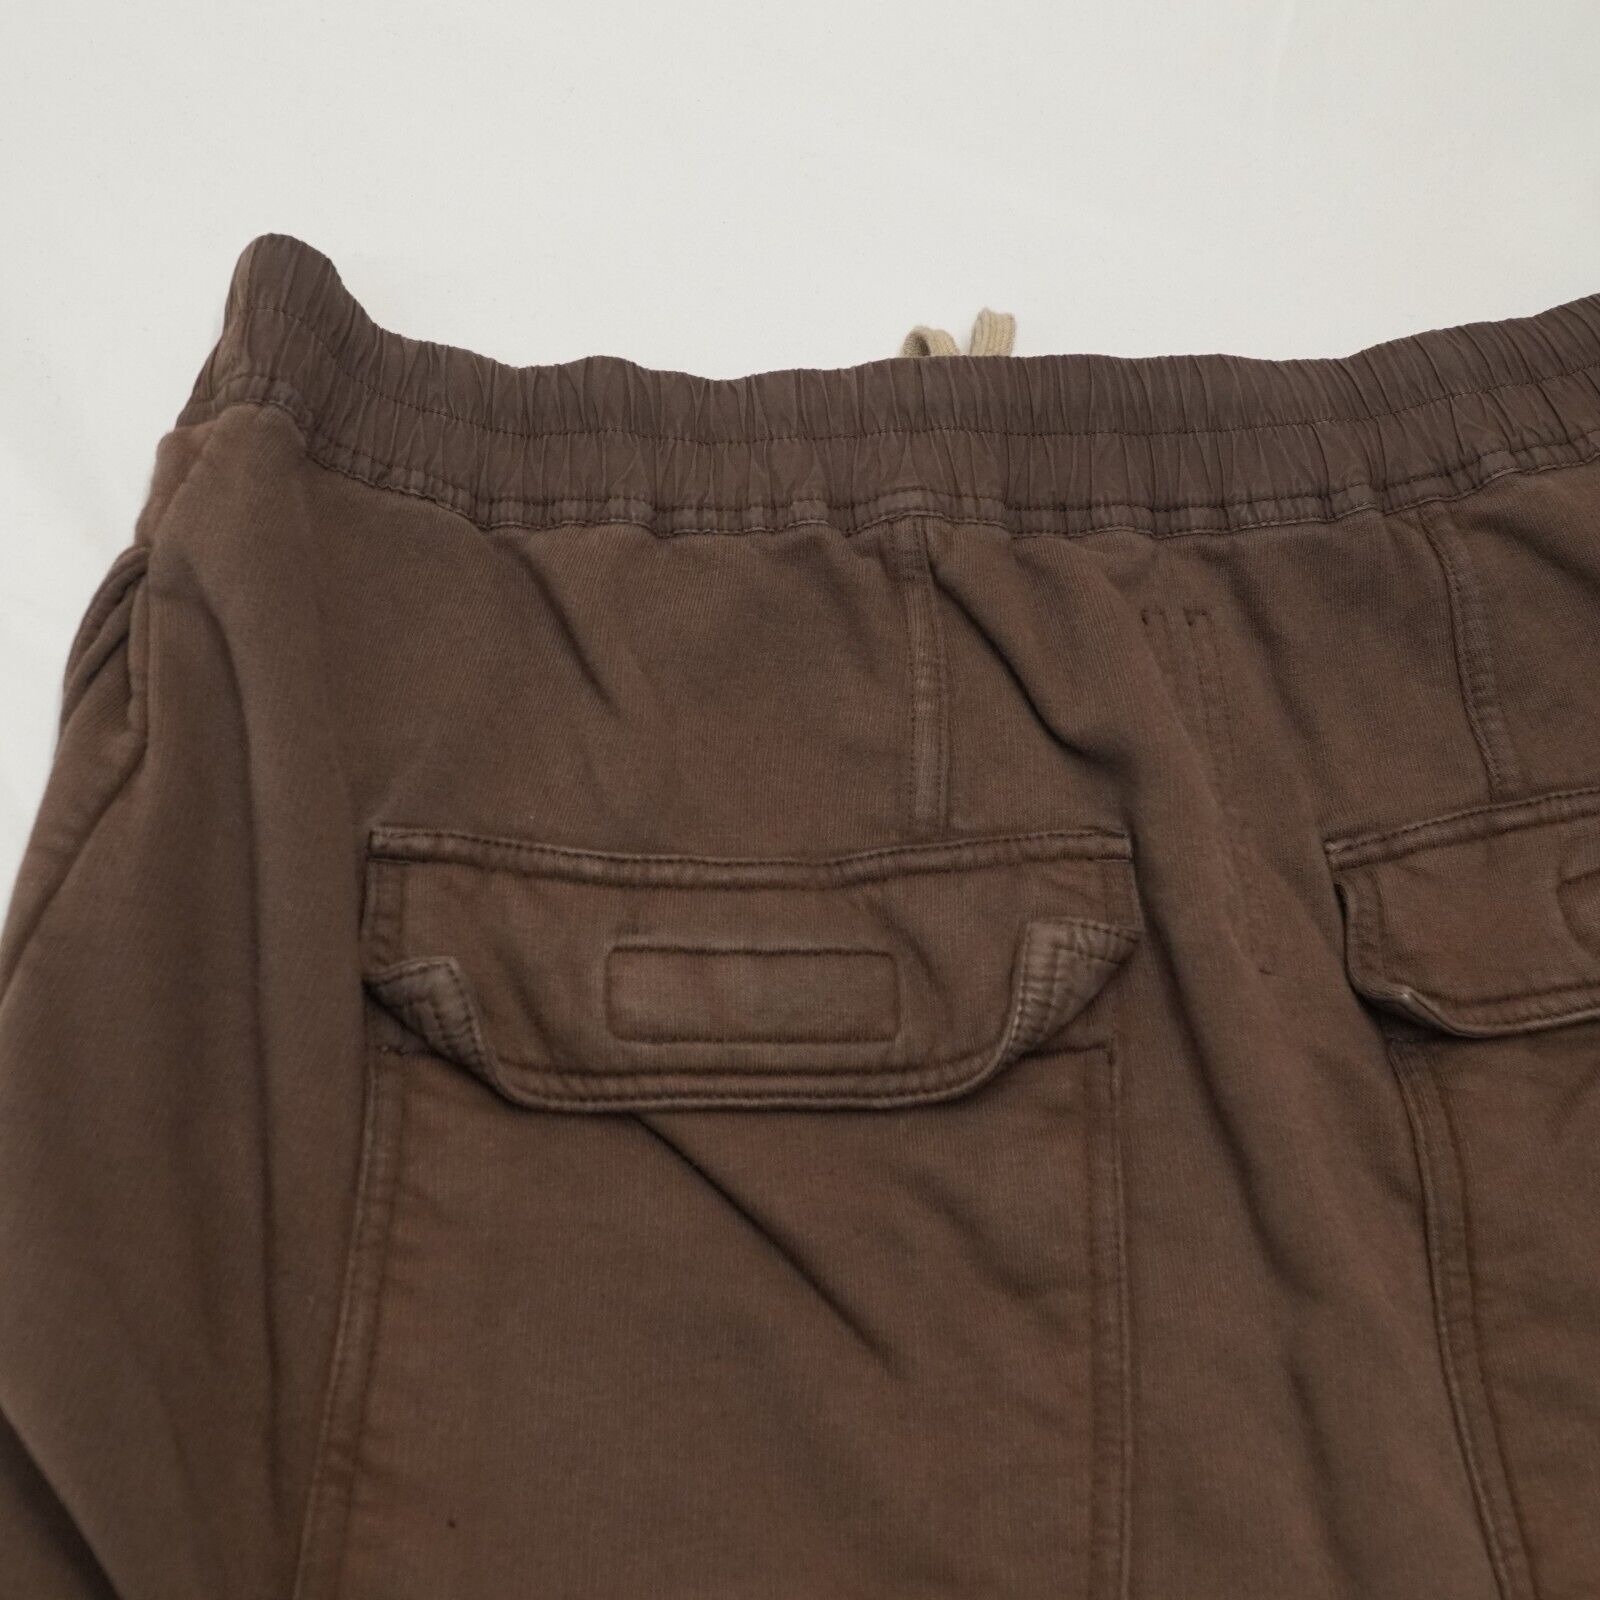 Rick Shorts Drop Crotch Cotton Macassar Brown Large - 15